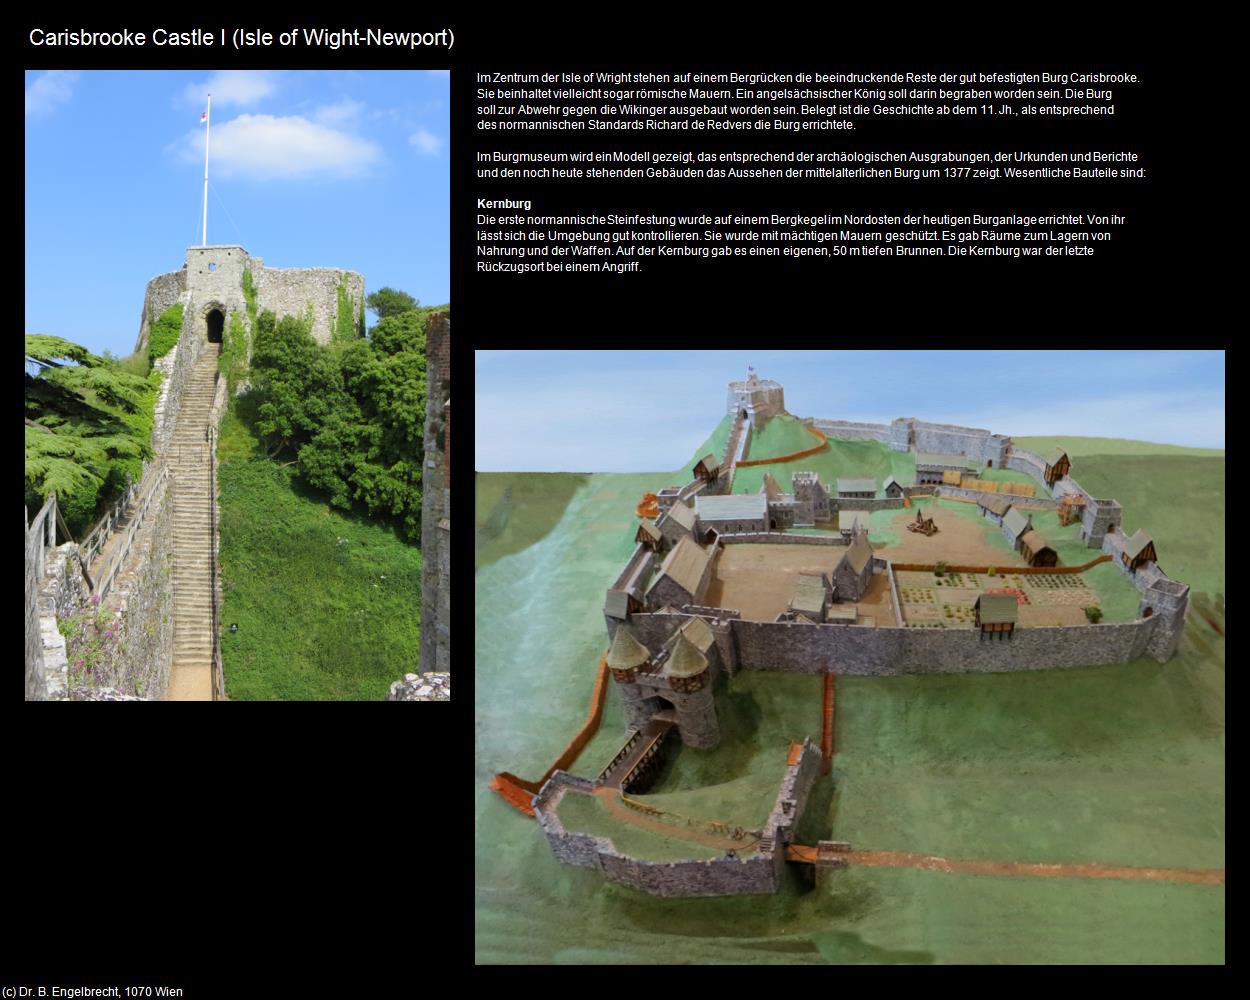 Carisbrooke Castle I (Newport) (Isle of Wight) in Kulturatlas-ENGLAND und WALES